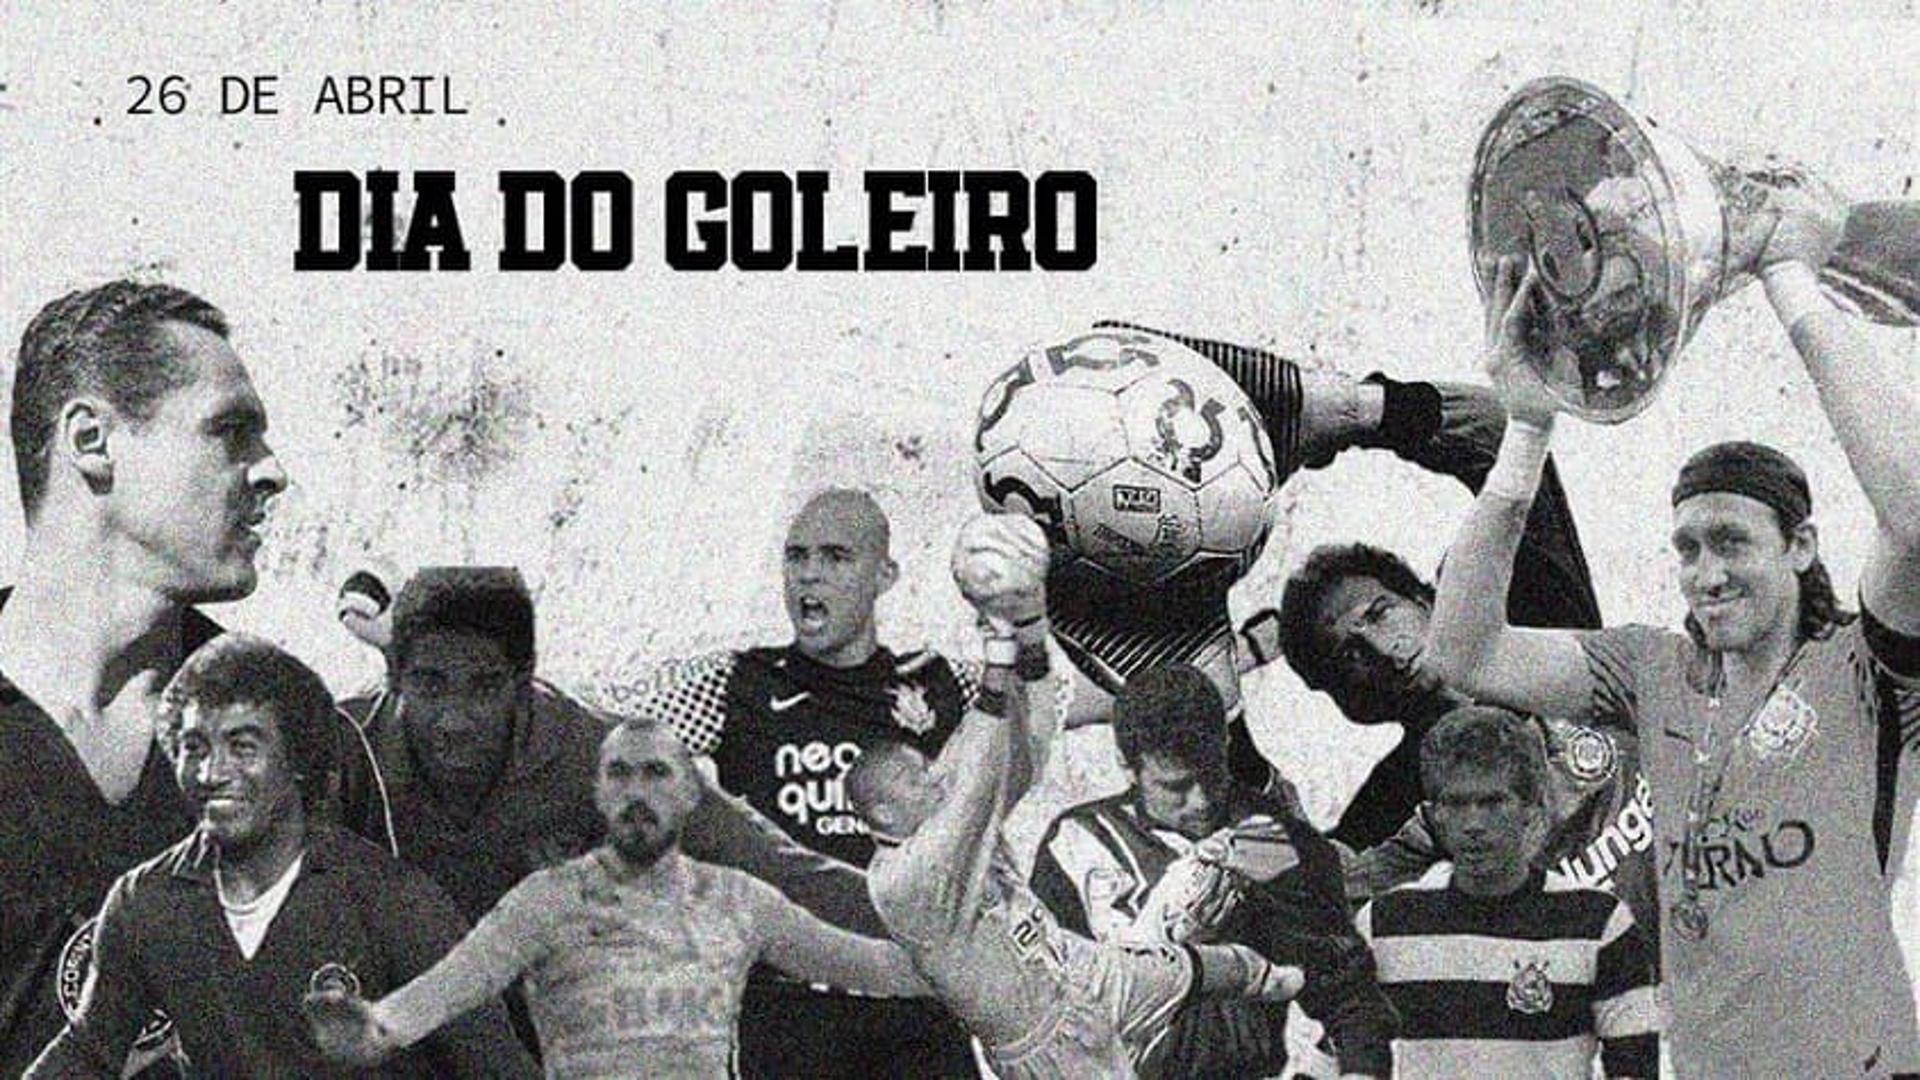 Dia do Goleiro - Corinthians